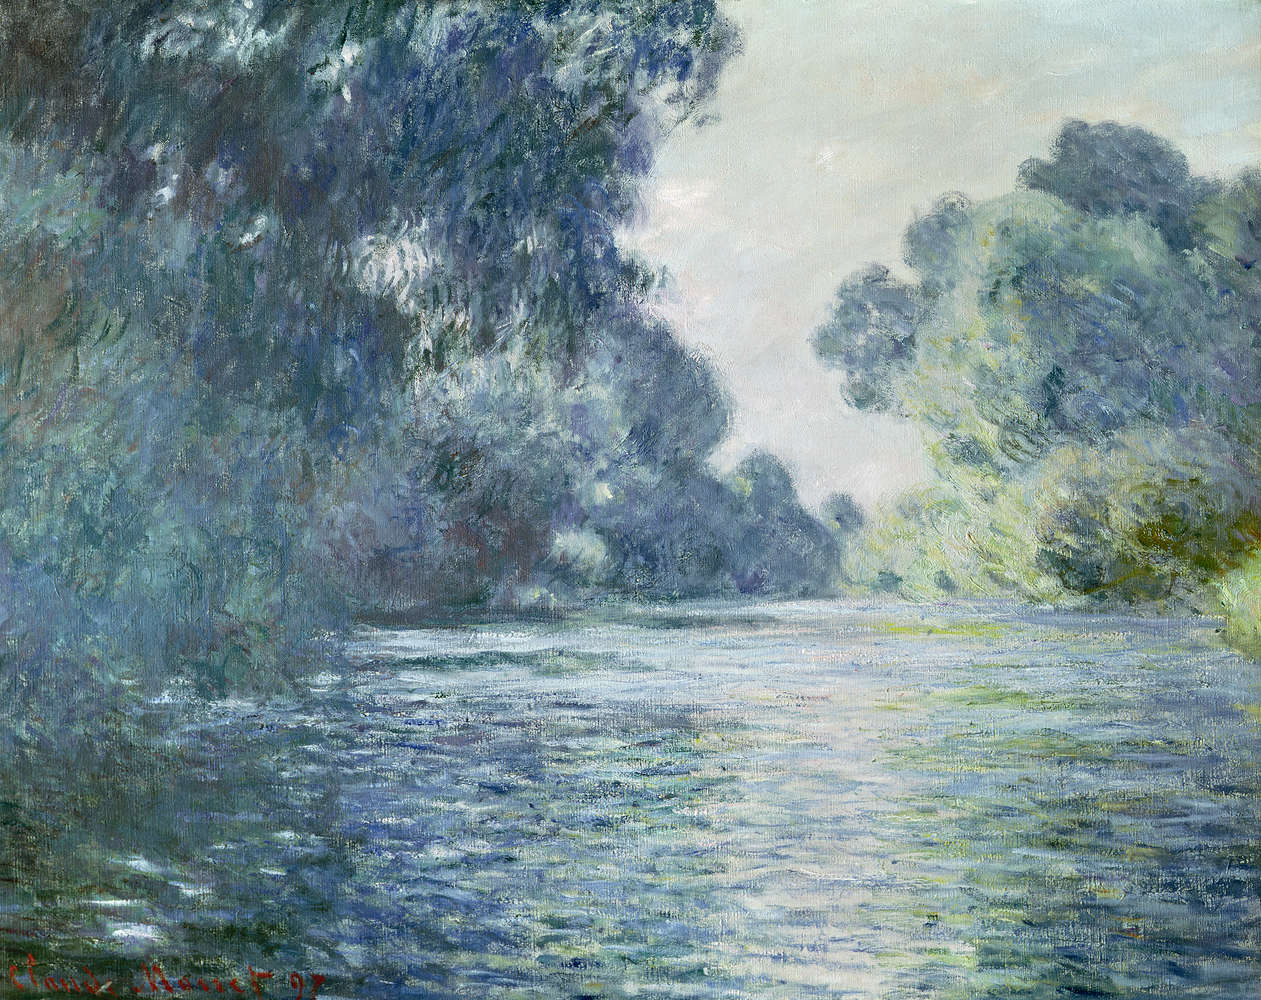             Fotomurali "Su un ramo della Senna vicino a Giverny" di Claude Monet
        